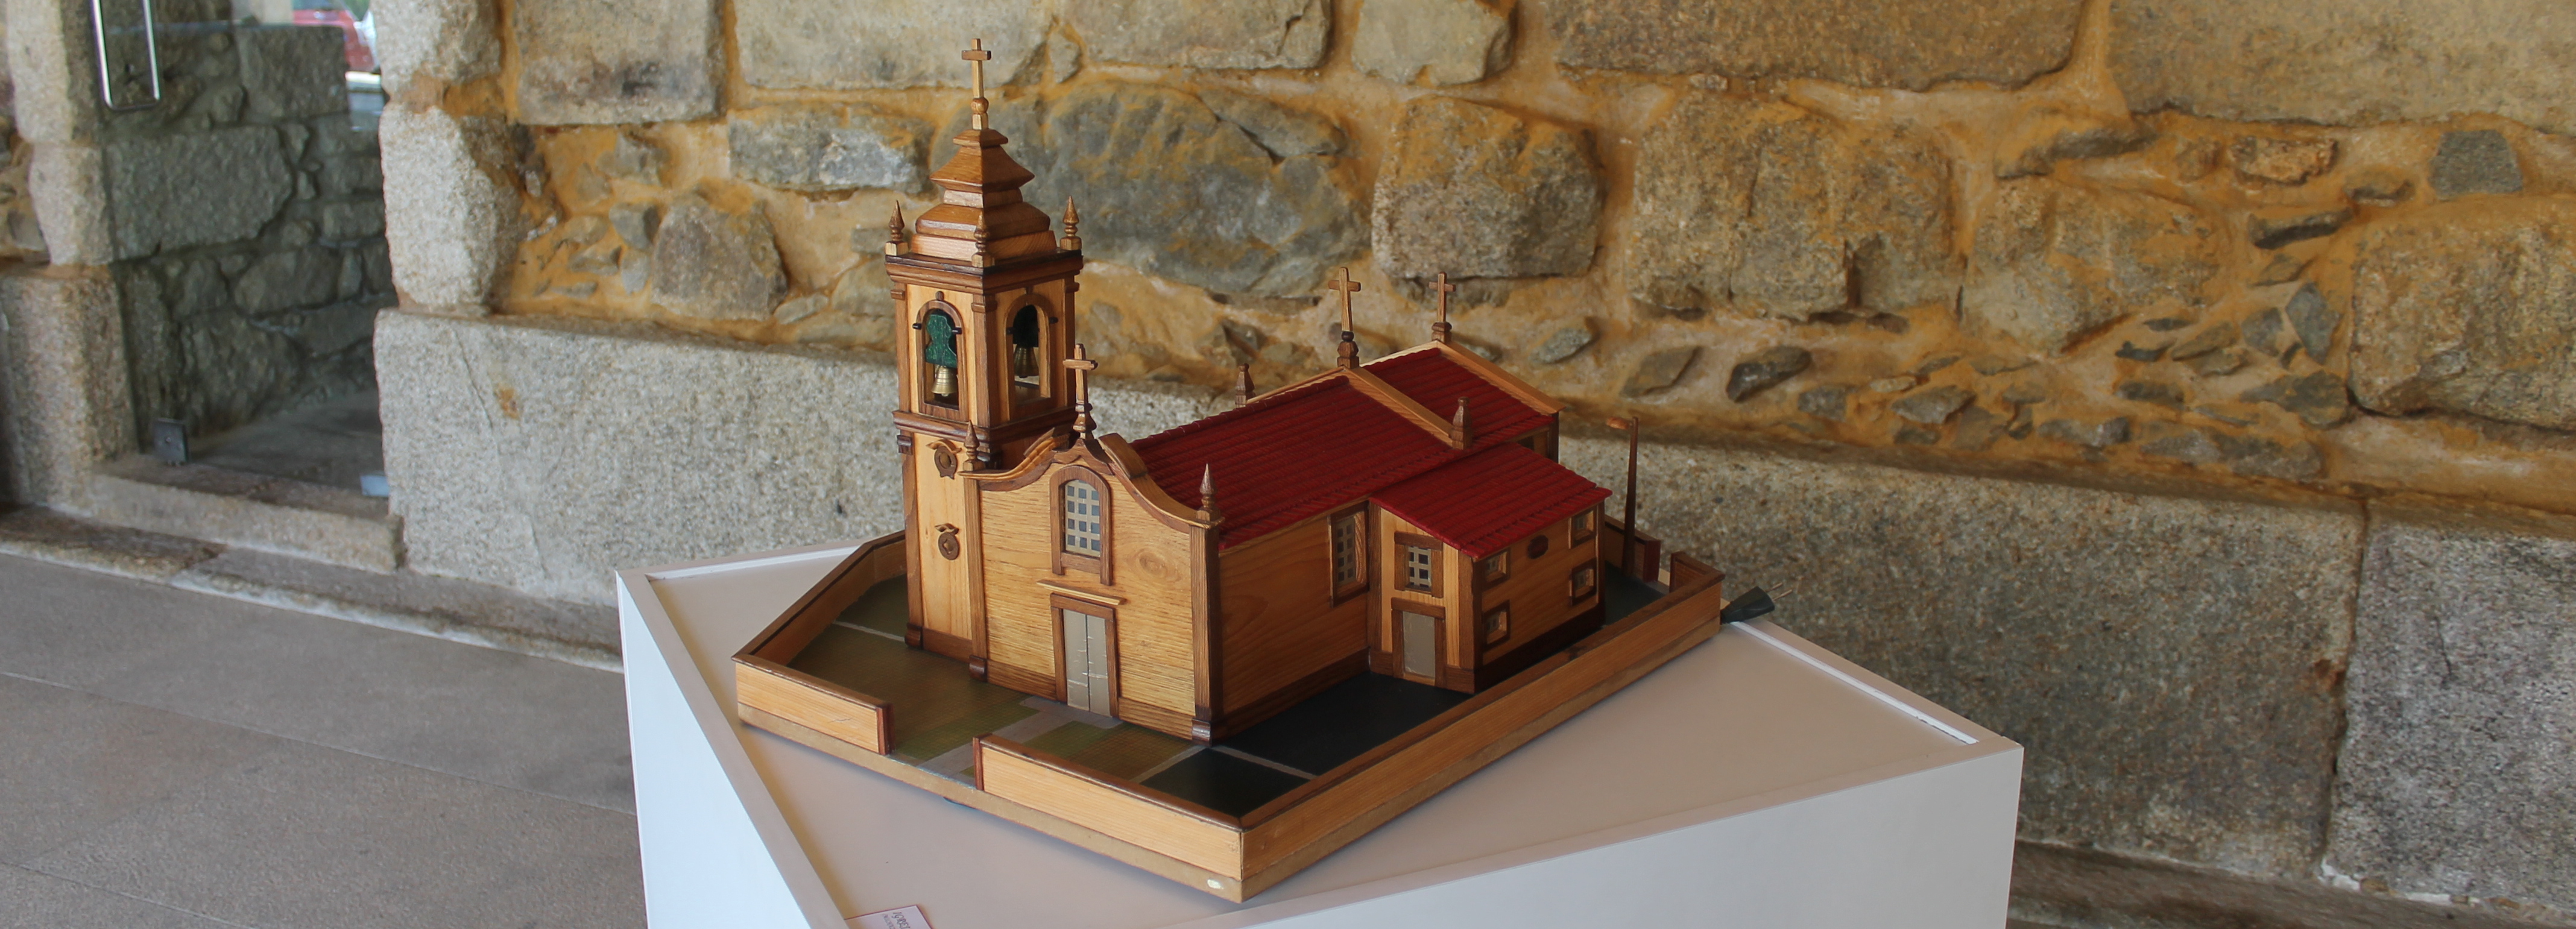 Exposição de miniaturas em madeira na Sala Gótica